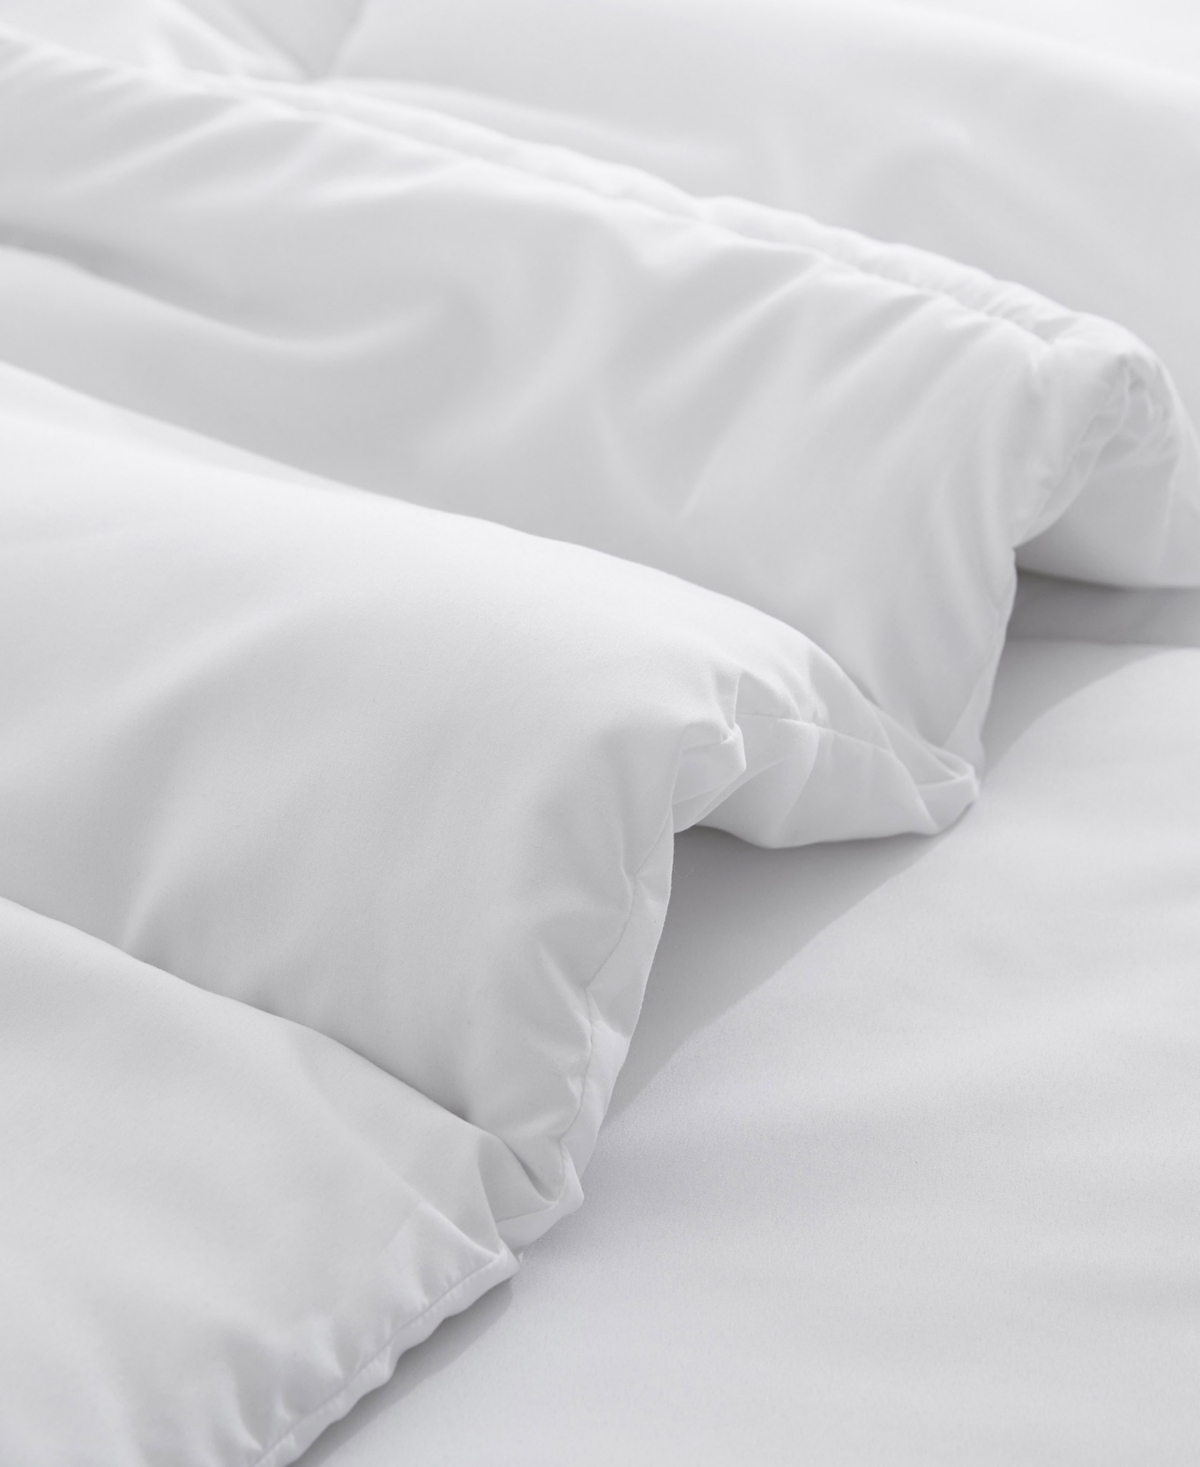 Shop Unikome All Season Down Alternative Comforter, Twin In White